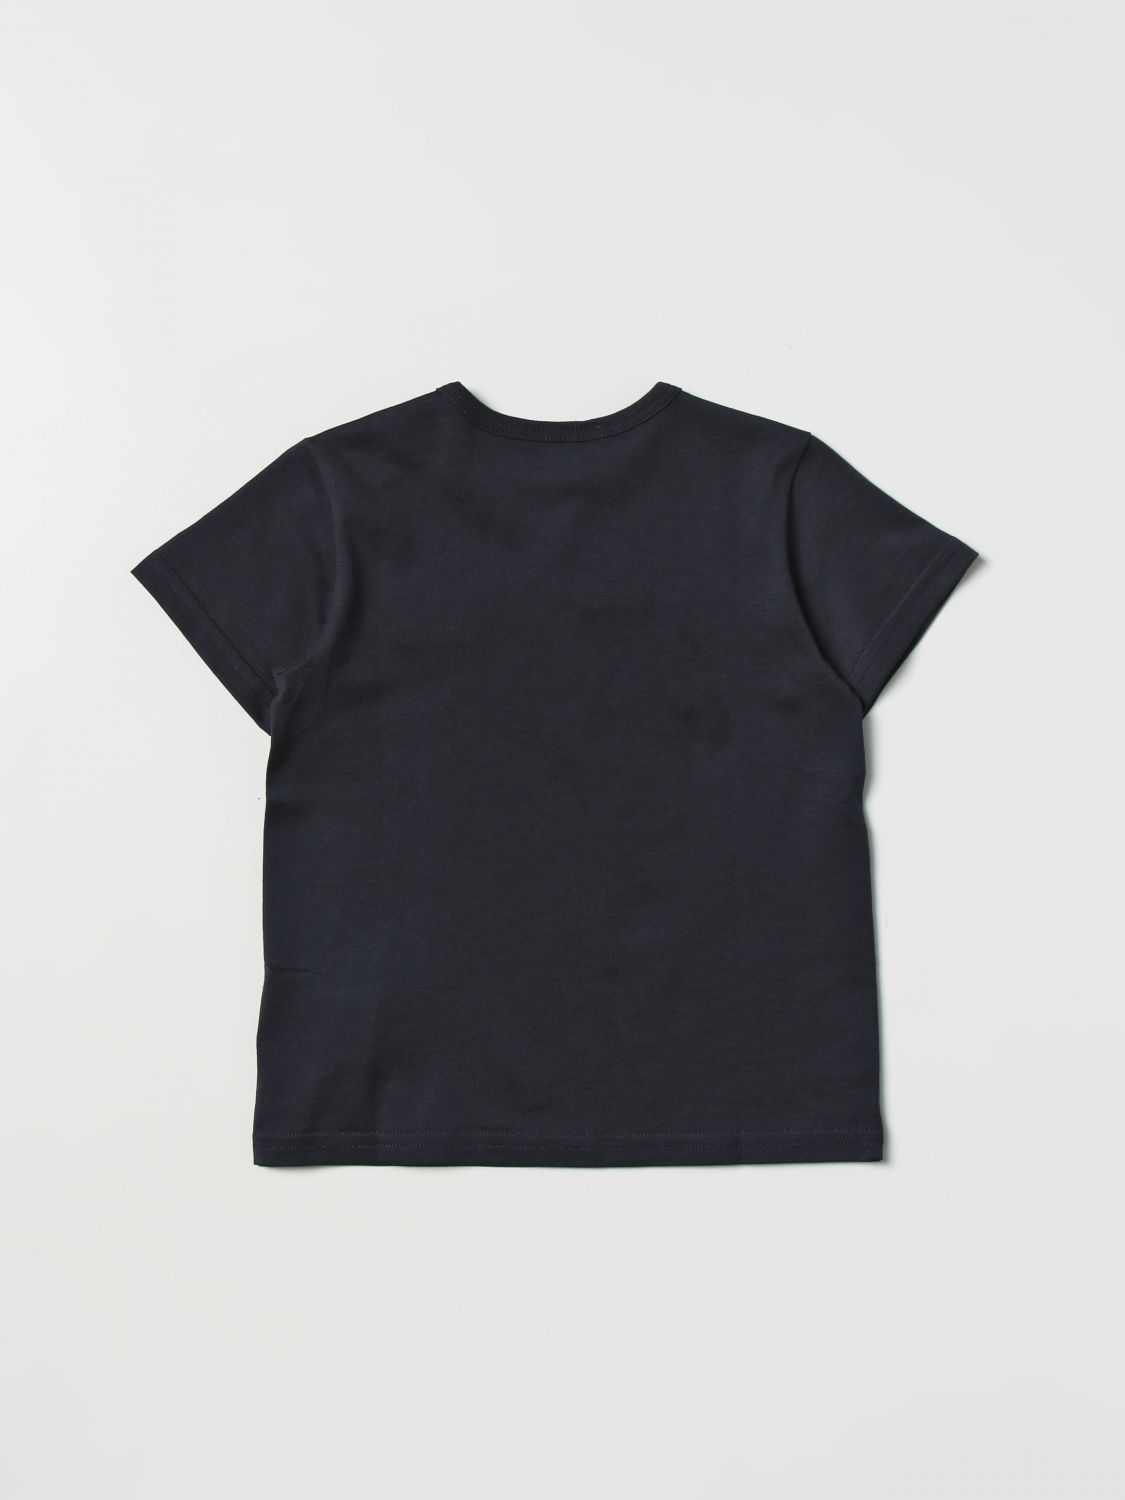 DOLCE & GABBANA: t-shirt for baby - Navy | Dolce & Gabbana t-shirt ...